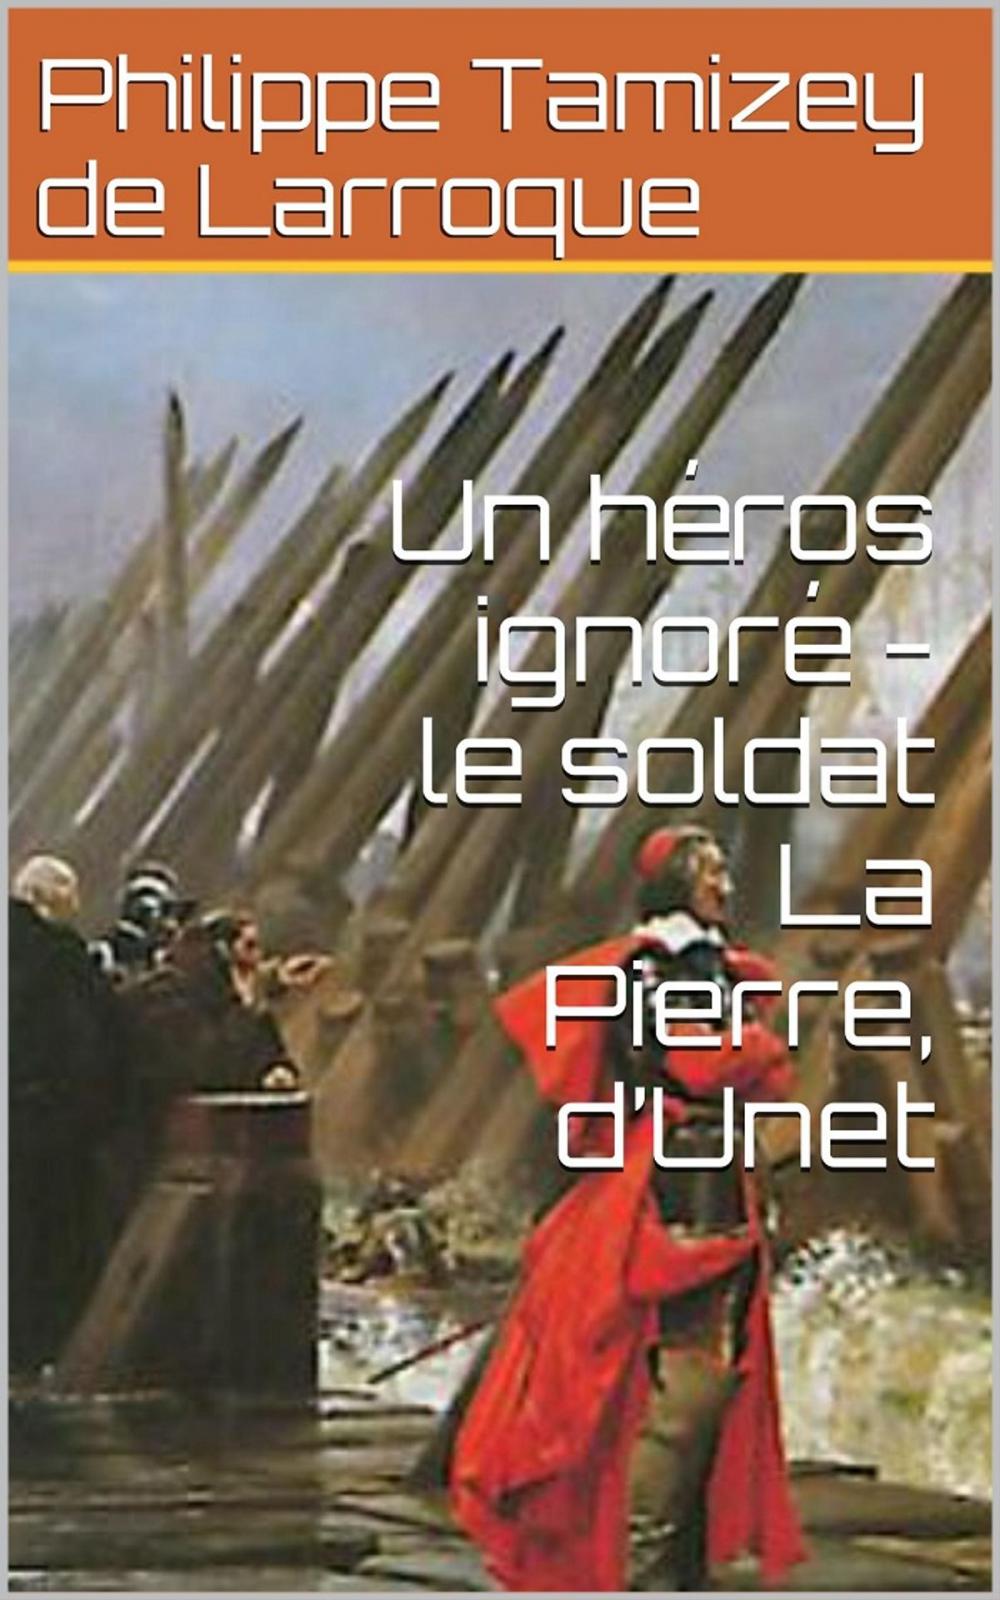 Big bigCover of Un héros ignoré - le soldat La Pierre, d’Unet